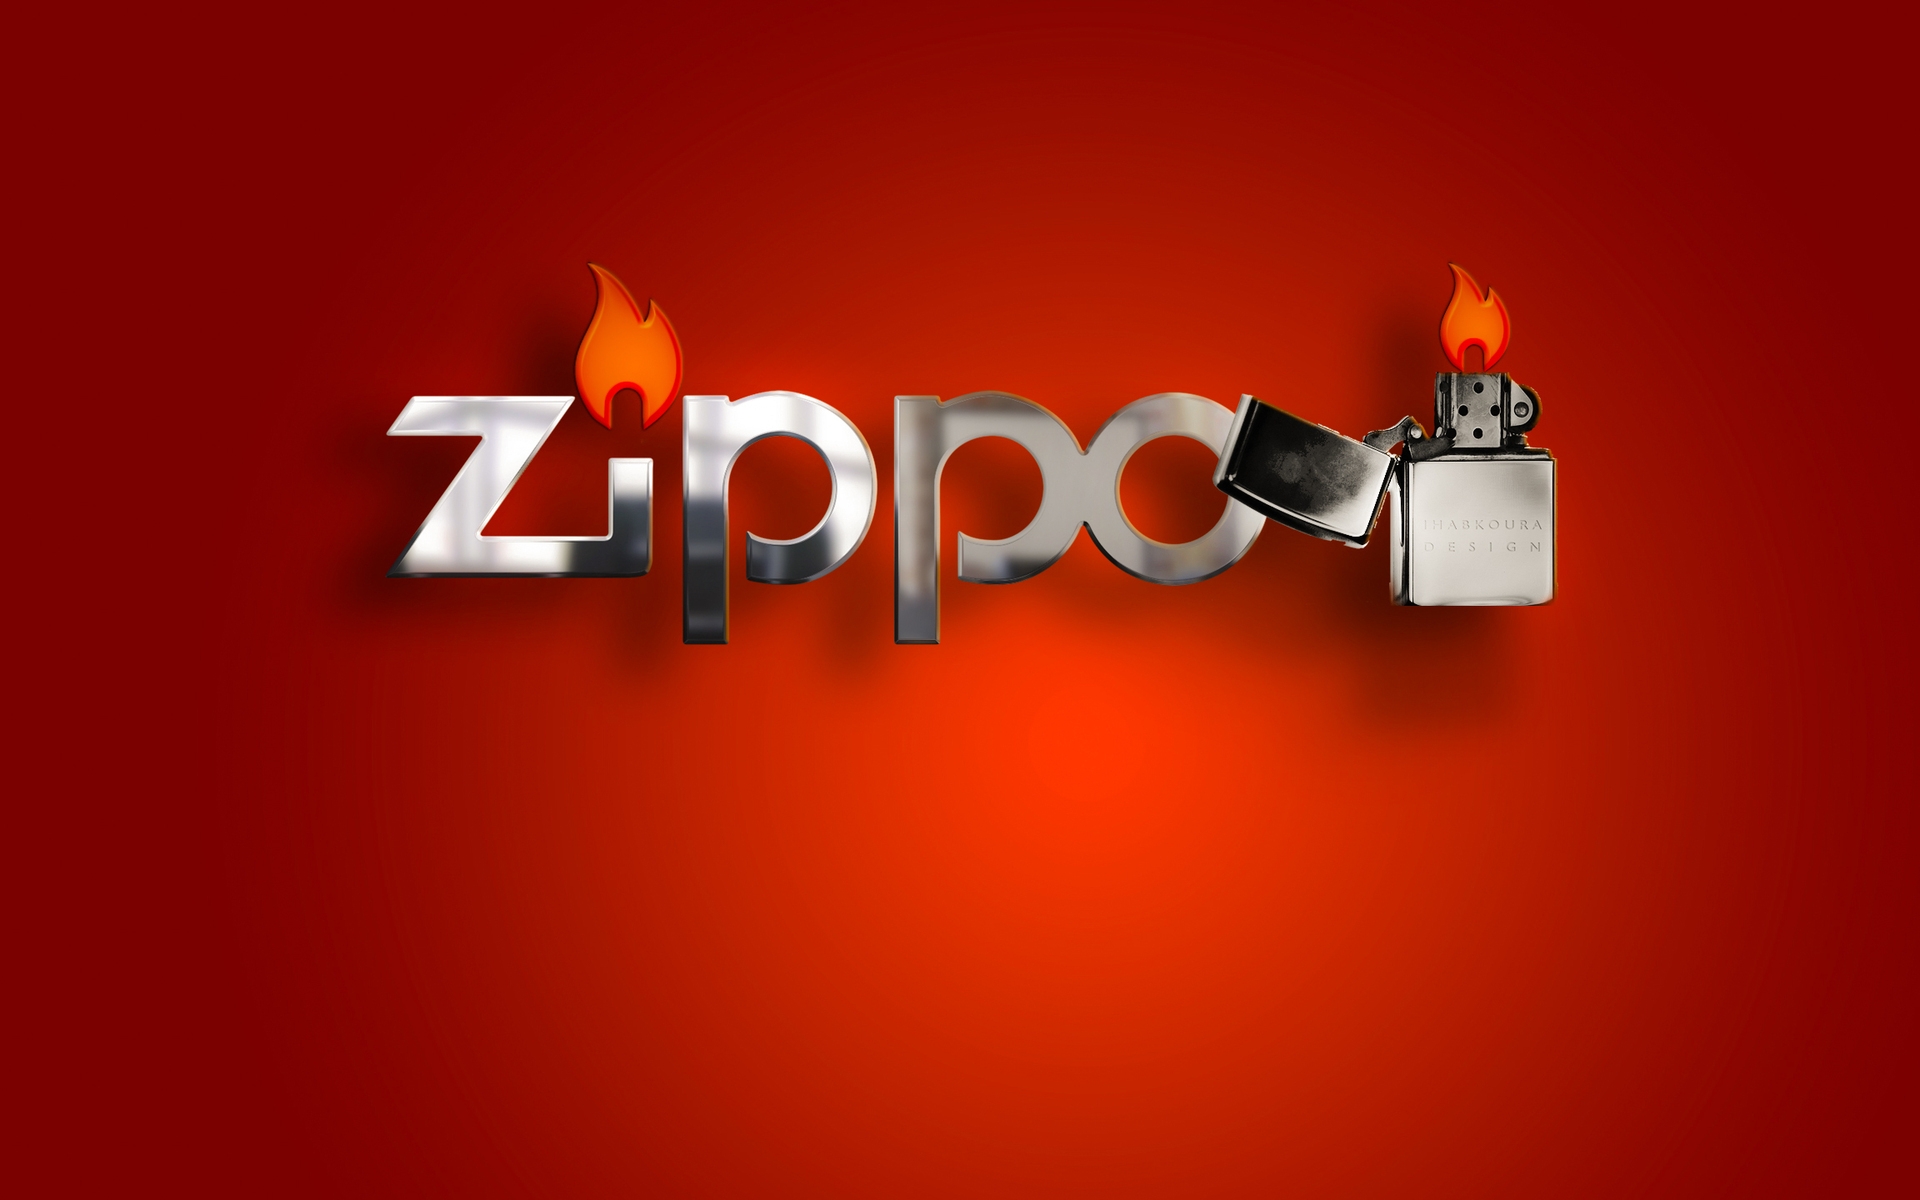 Zippo Lighter for 1920 x 1200 widescreen resolution